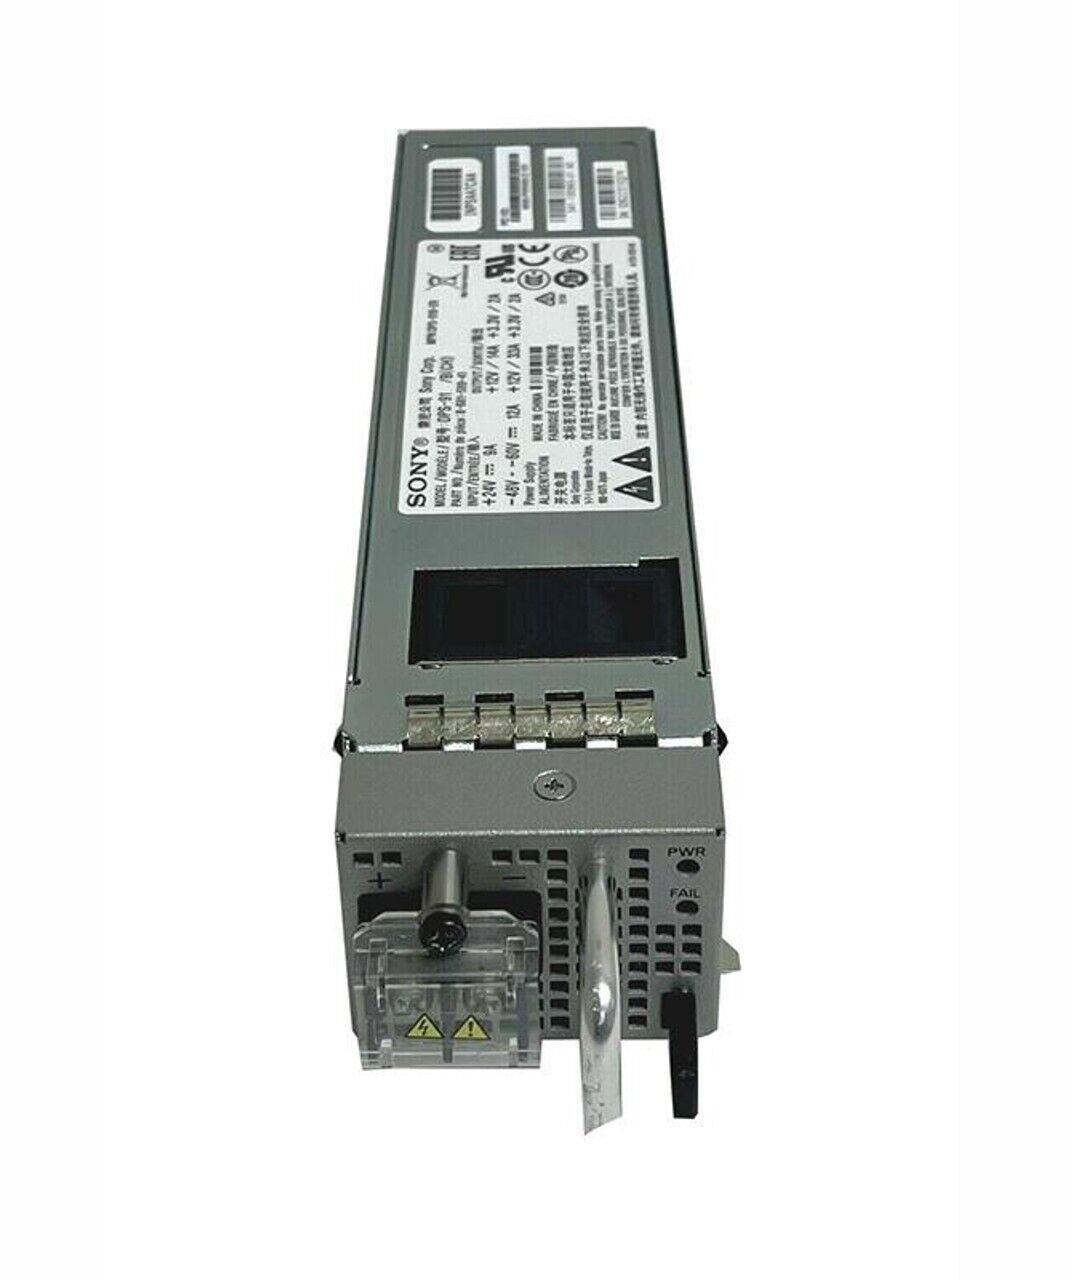 Cisco Systems NCS 540 400W AC Power Supply N540-PWR400-A